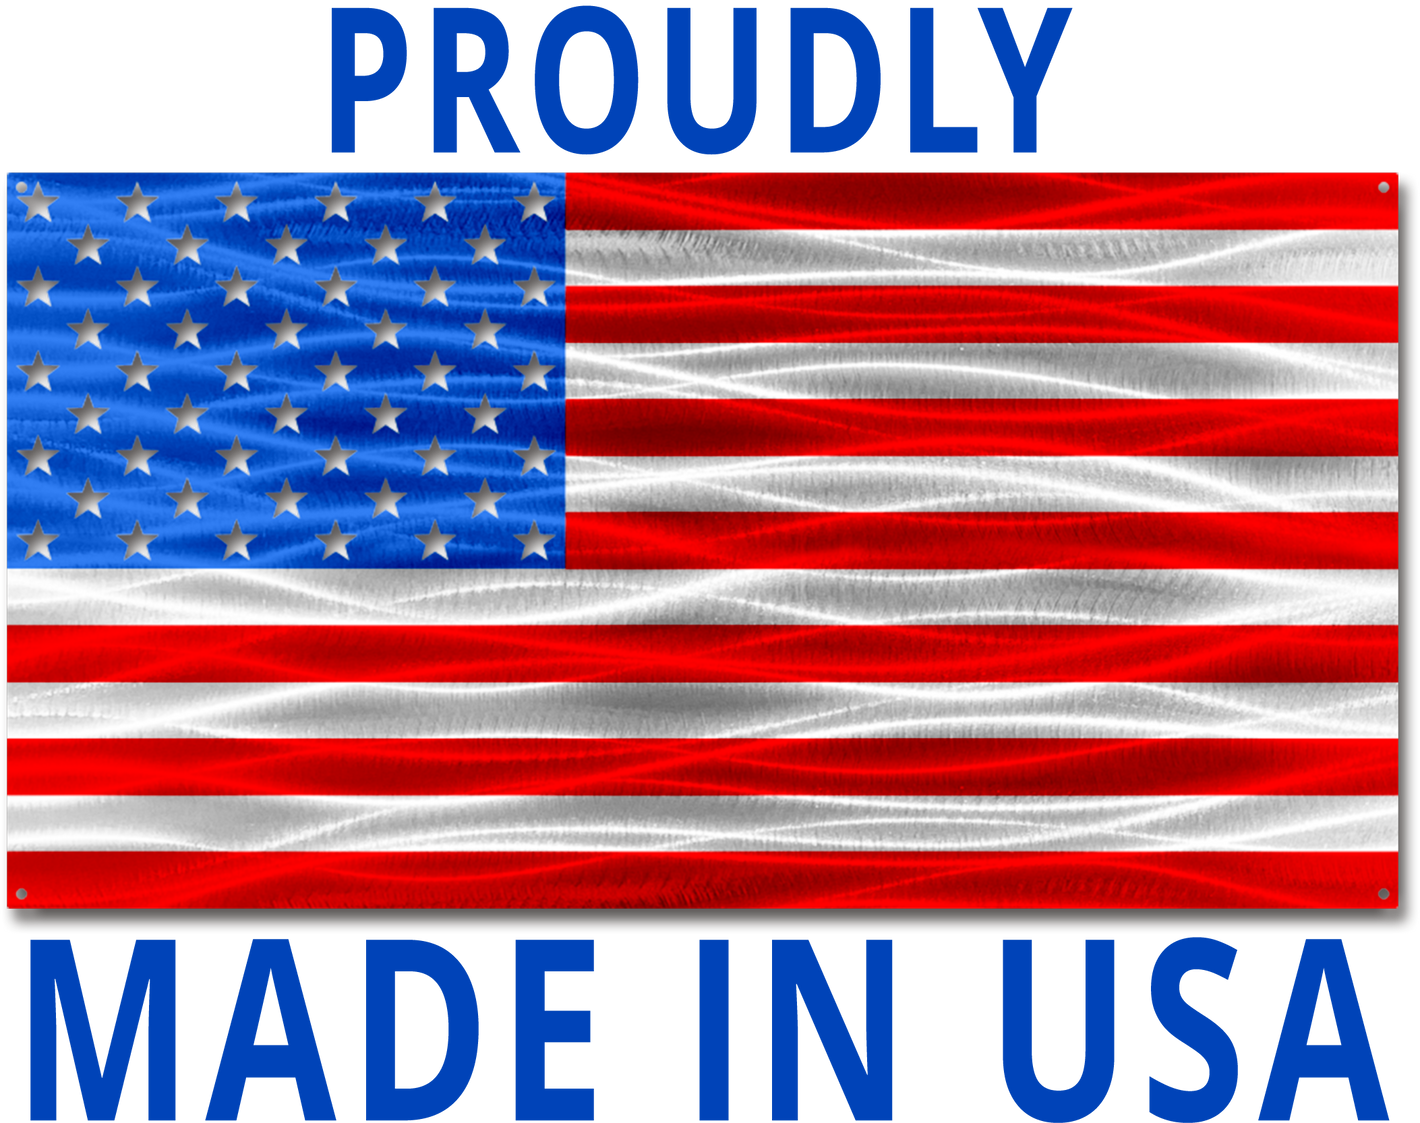 Made in America, Made in USA, Made in America Home Decor, Made in America Office Decor, Made in America Plaques, Made in America Gifts